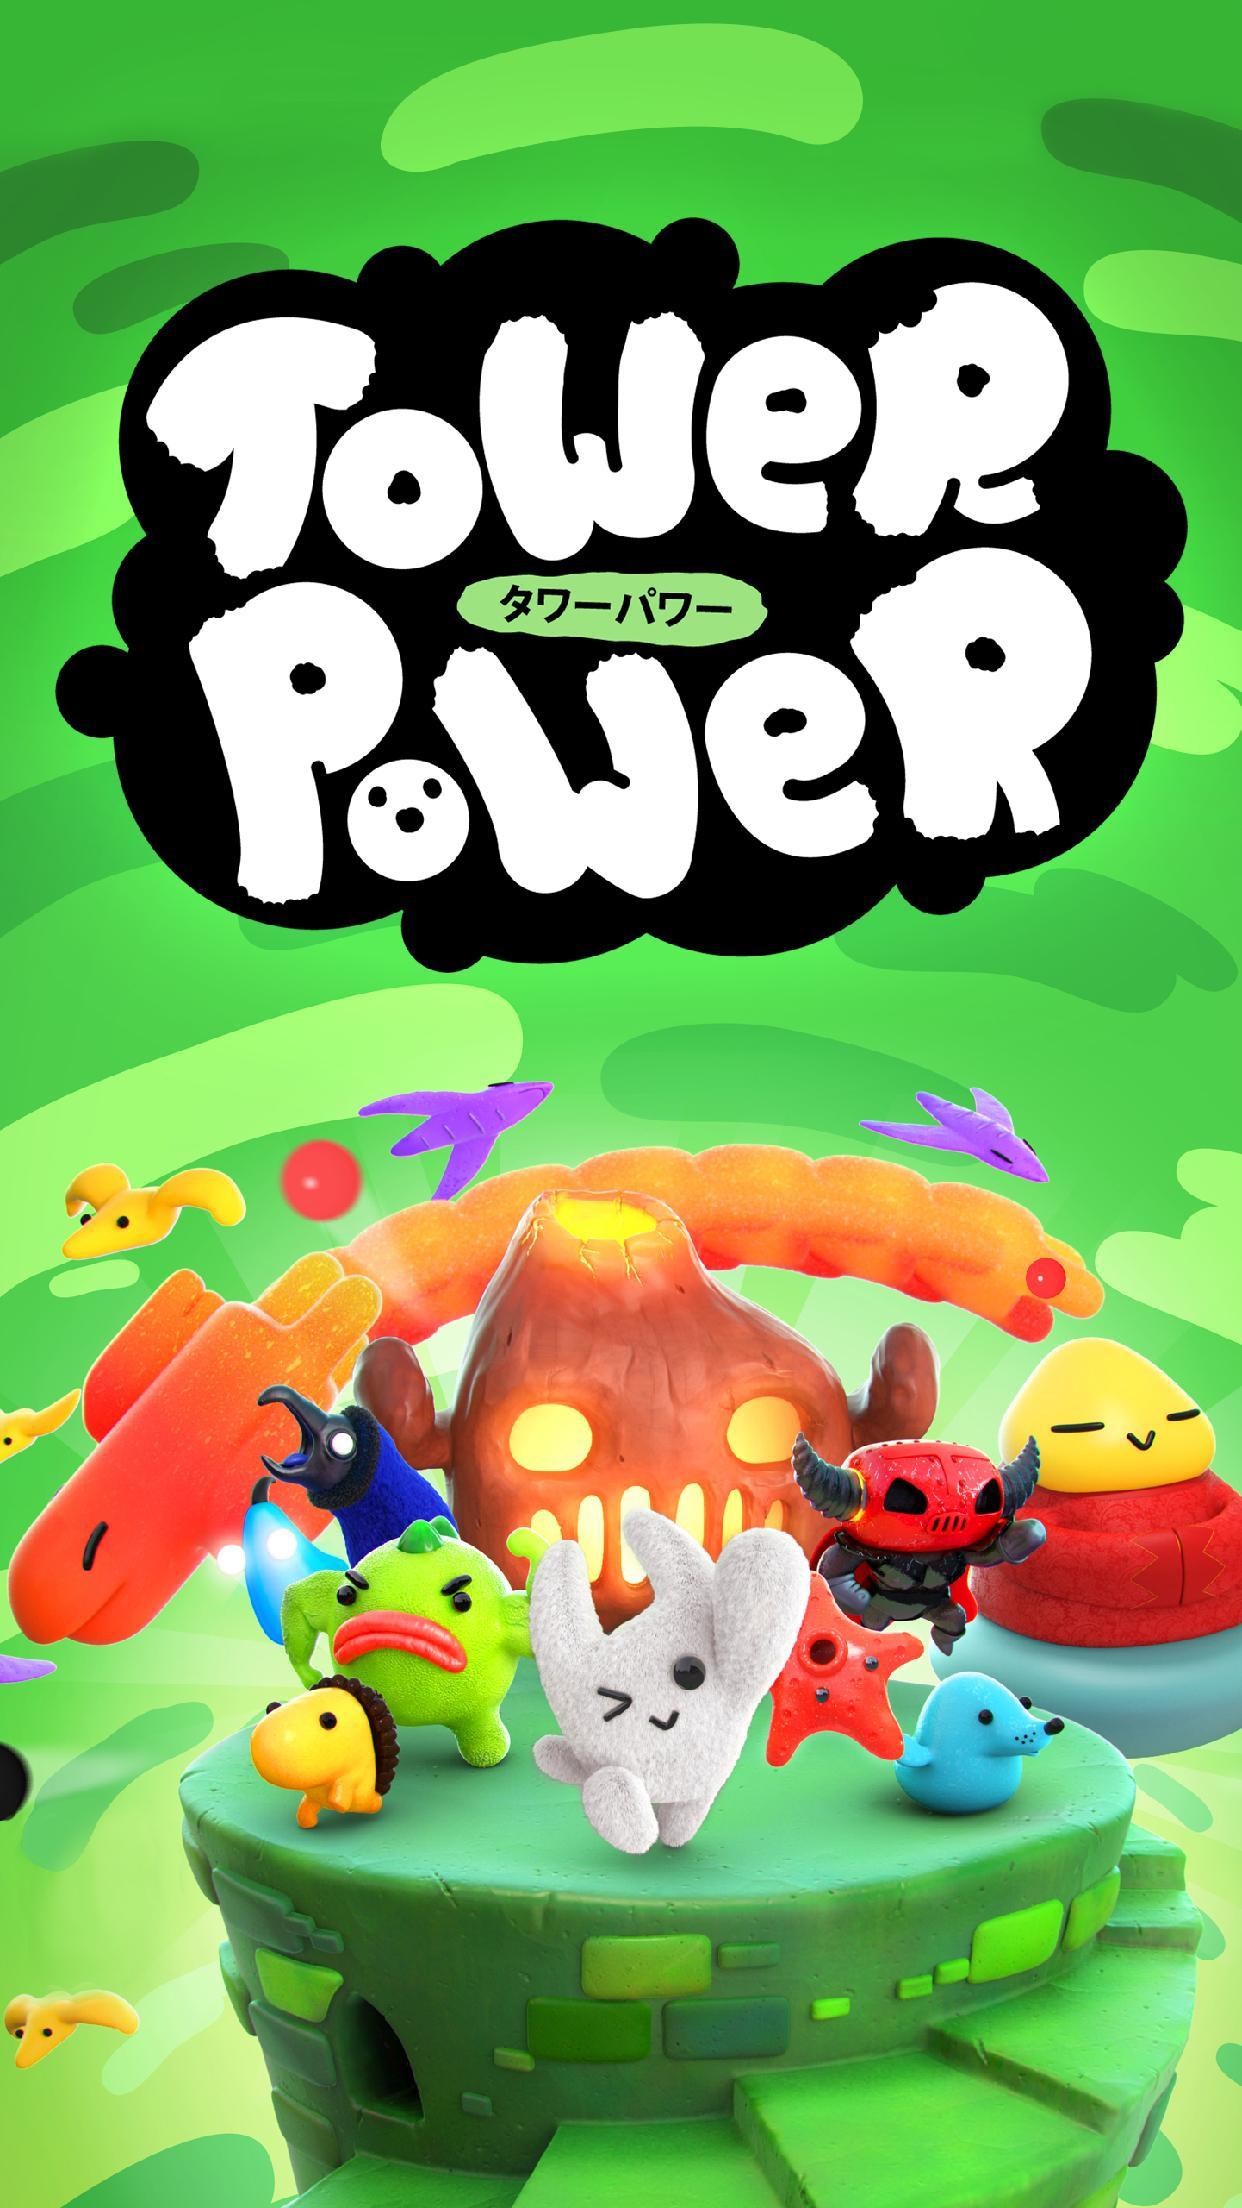 Screenshot 1 of Tower Power (Hindi Inilabas) 1.0.0